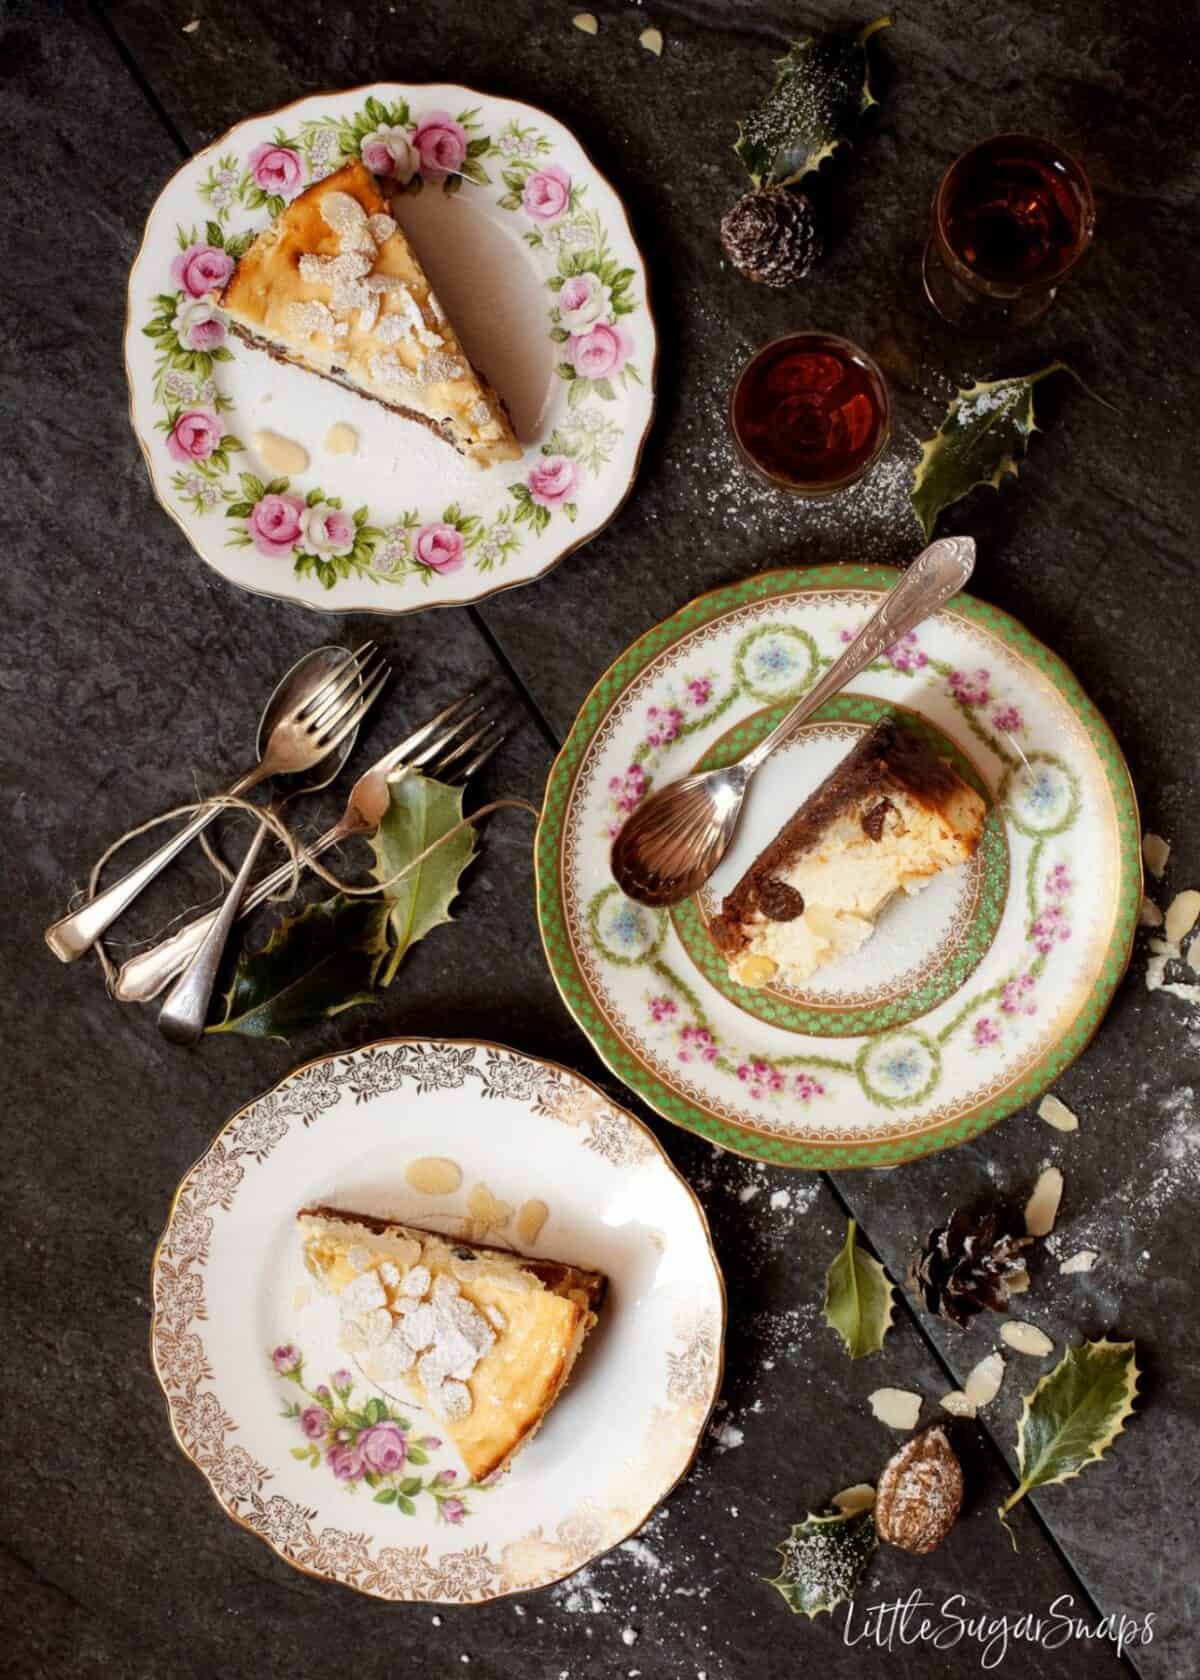 Slices of Italian Ricotta Cheesecake on vintage tea plates.